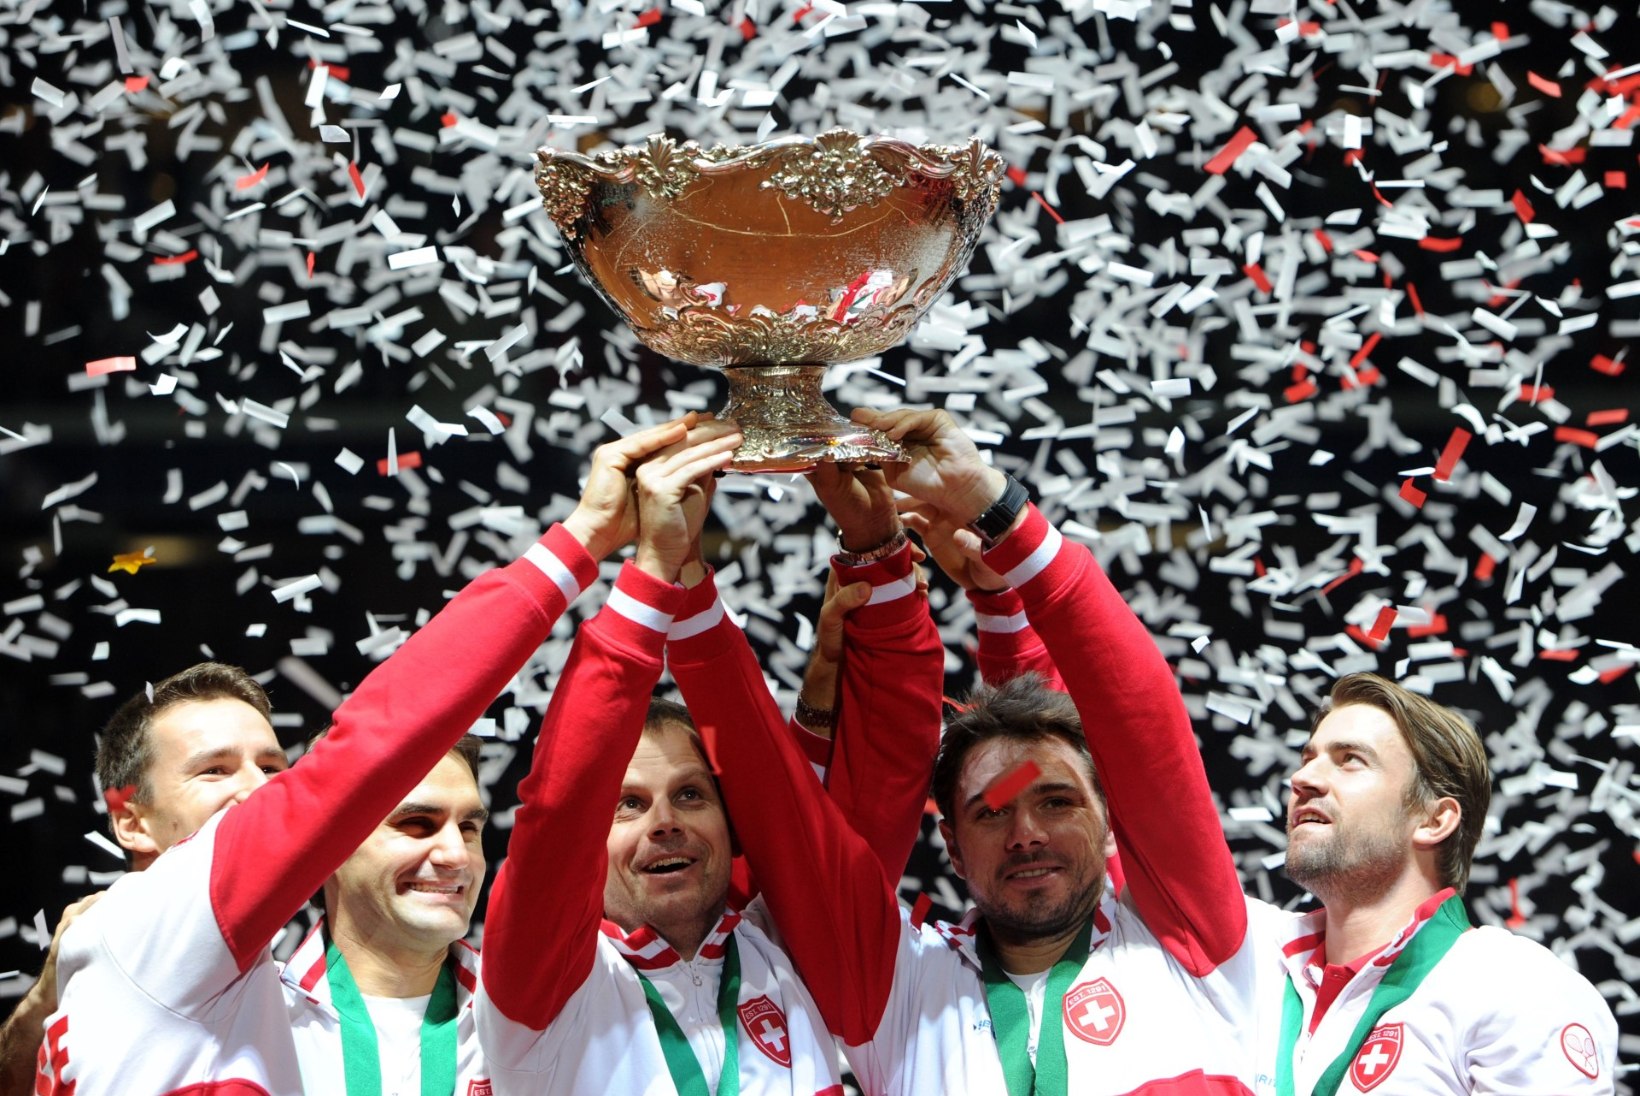 FOTOD: Roger Federer tõi Šveitsile ajaloolise võidu